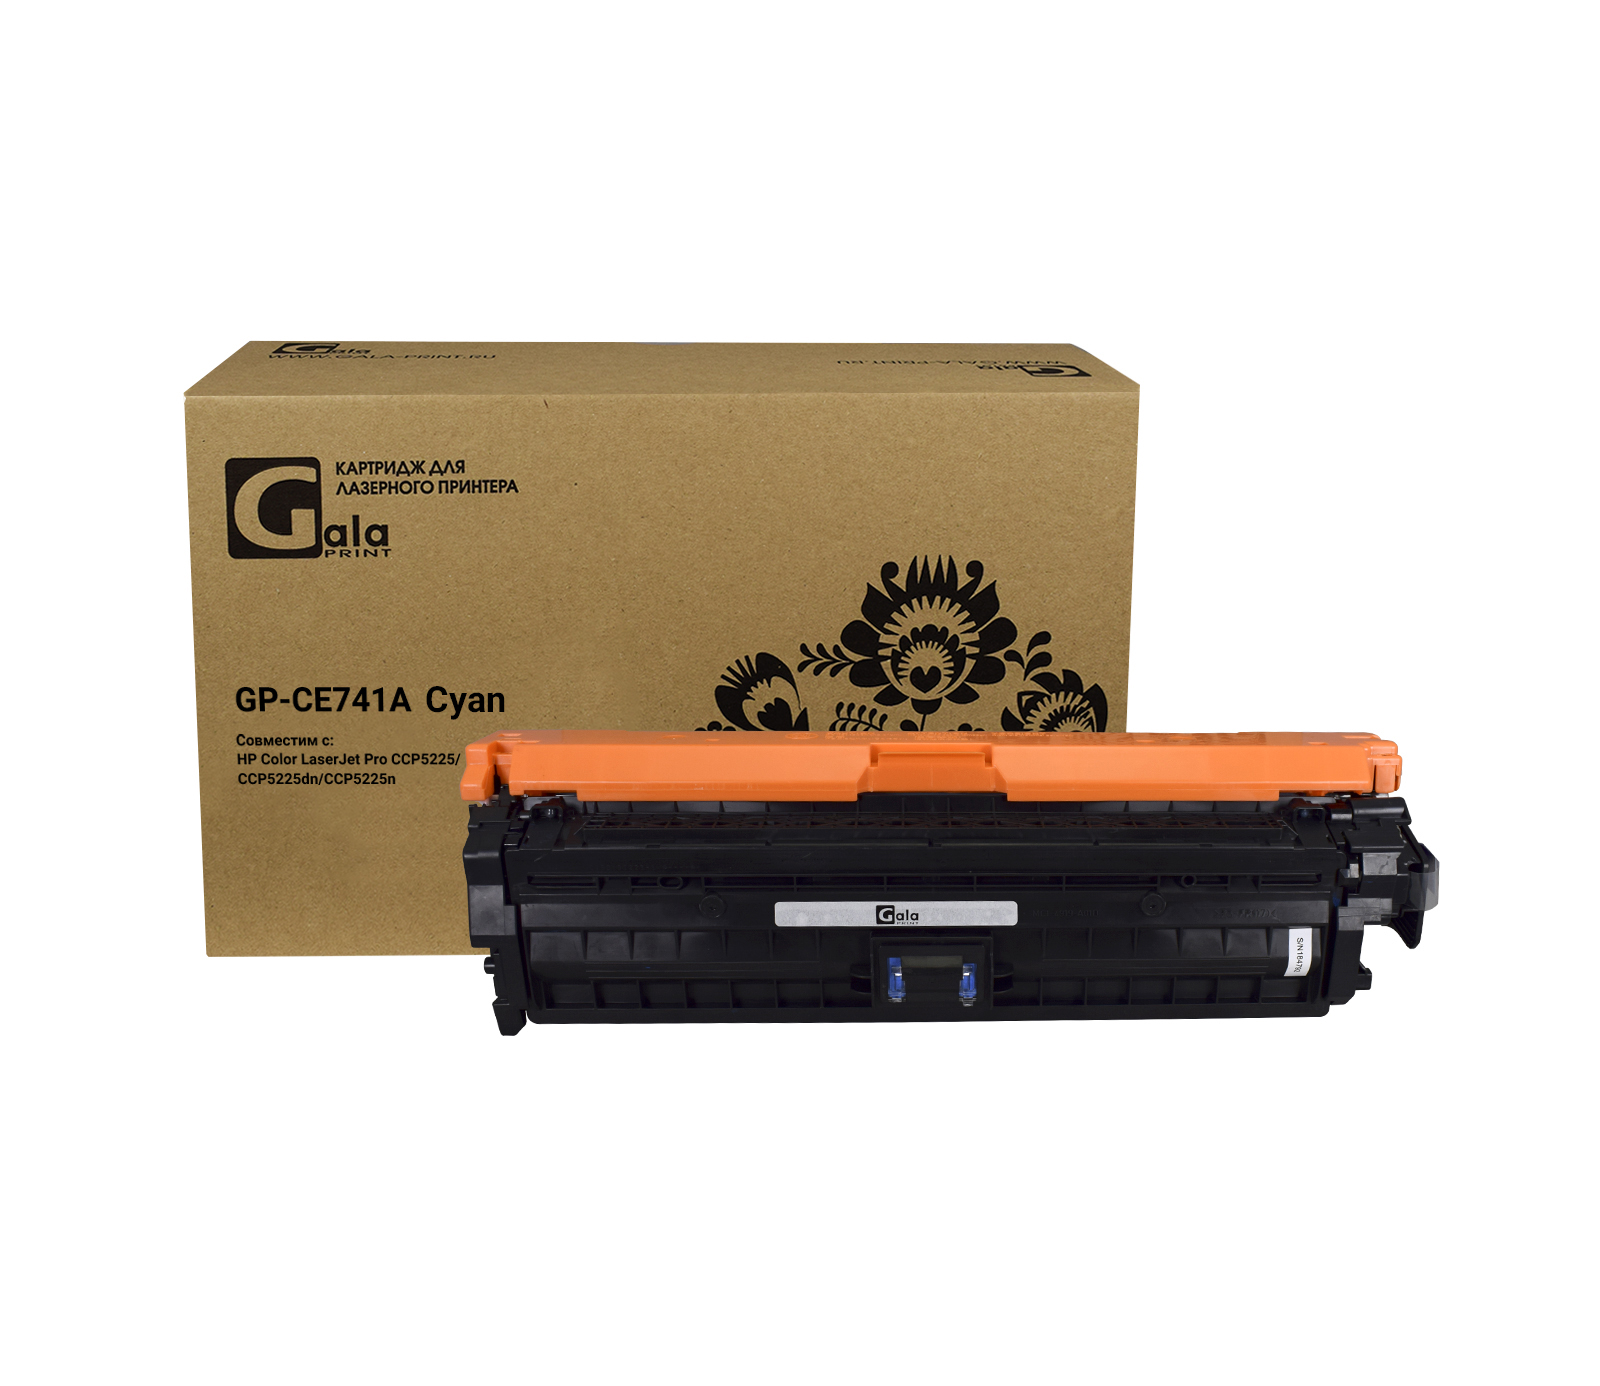 Картридж GP-CE741A для принтеров HP Color LaserJet CP5225/5225n/5225dn Cyan 7300 копий GalaPrint